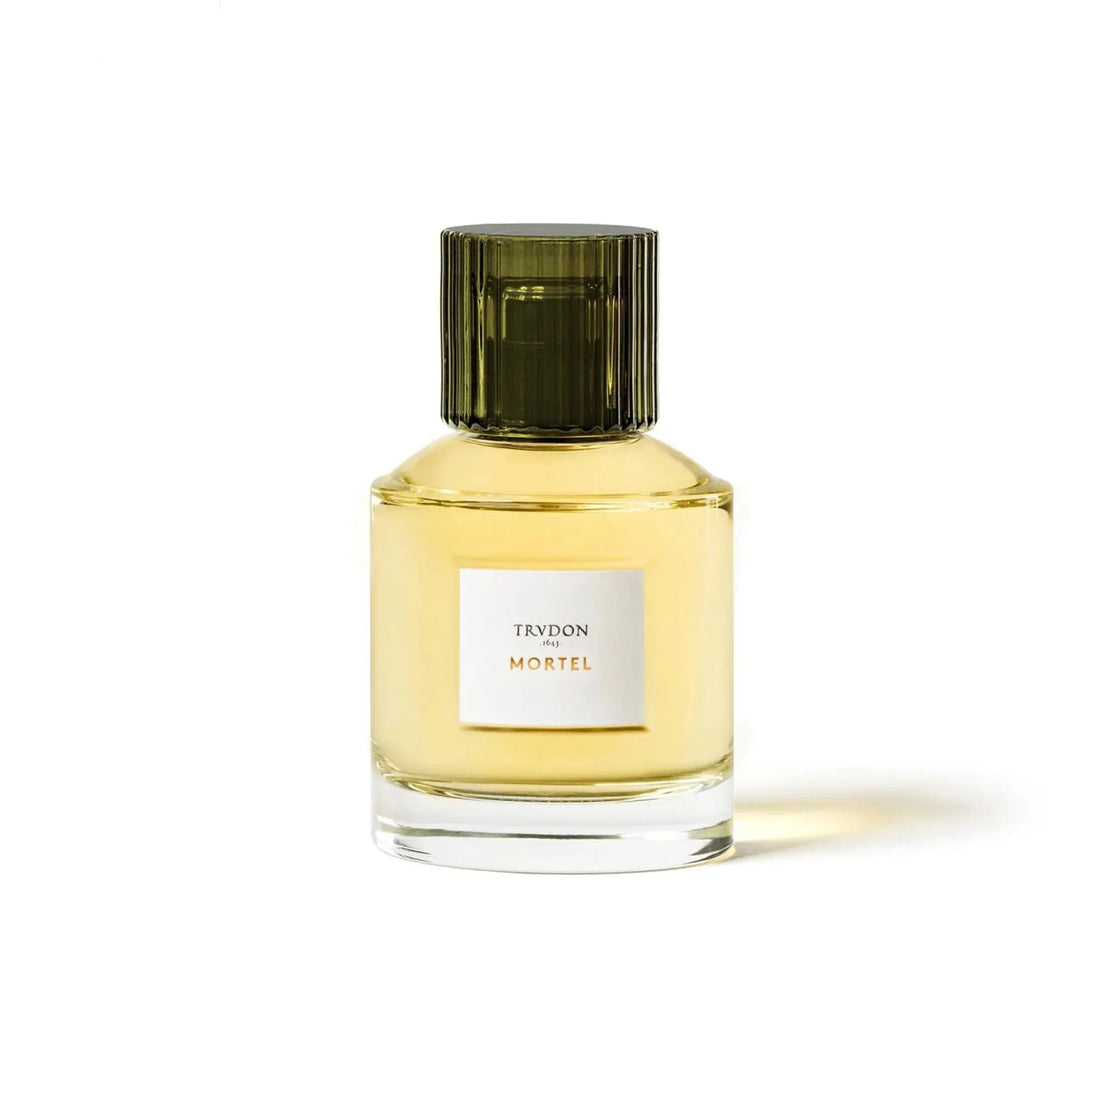 Trudon Mortel eau de parfum - 100 ml